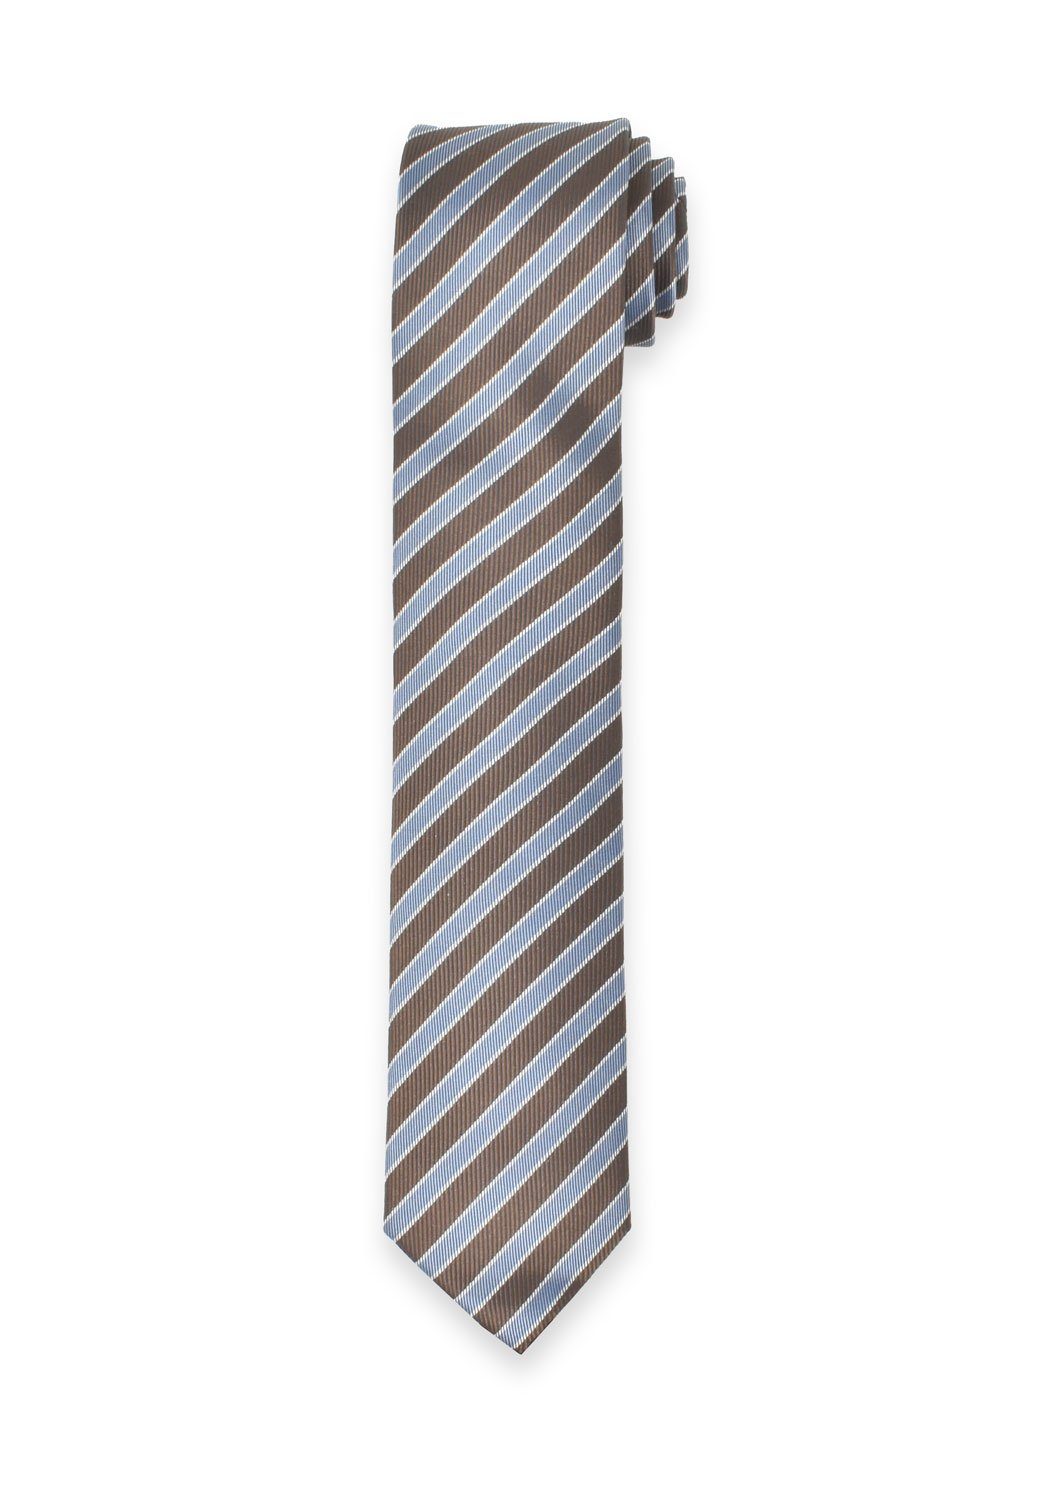 cm - - - Krawatte Krawatte 6,5 Hellblau/Braun MARVELIS Gestreift